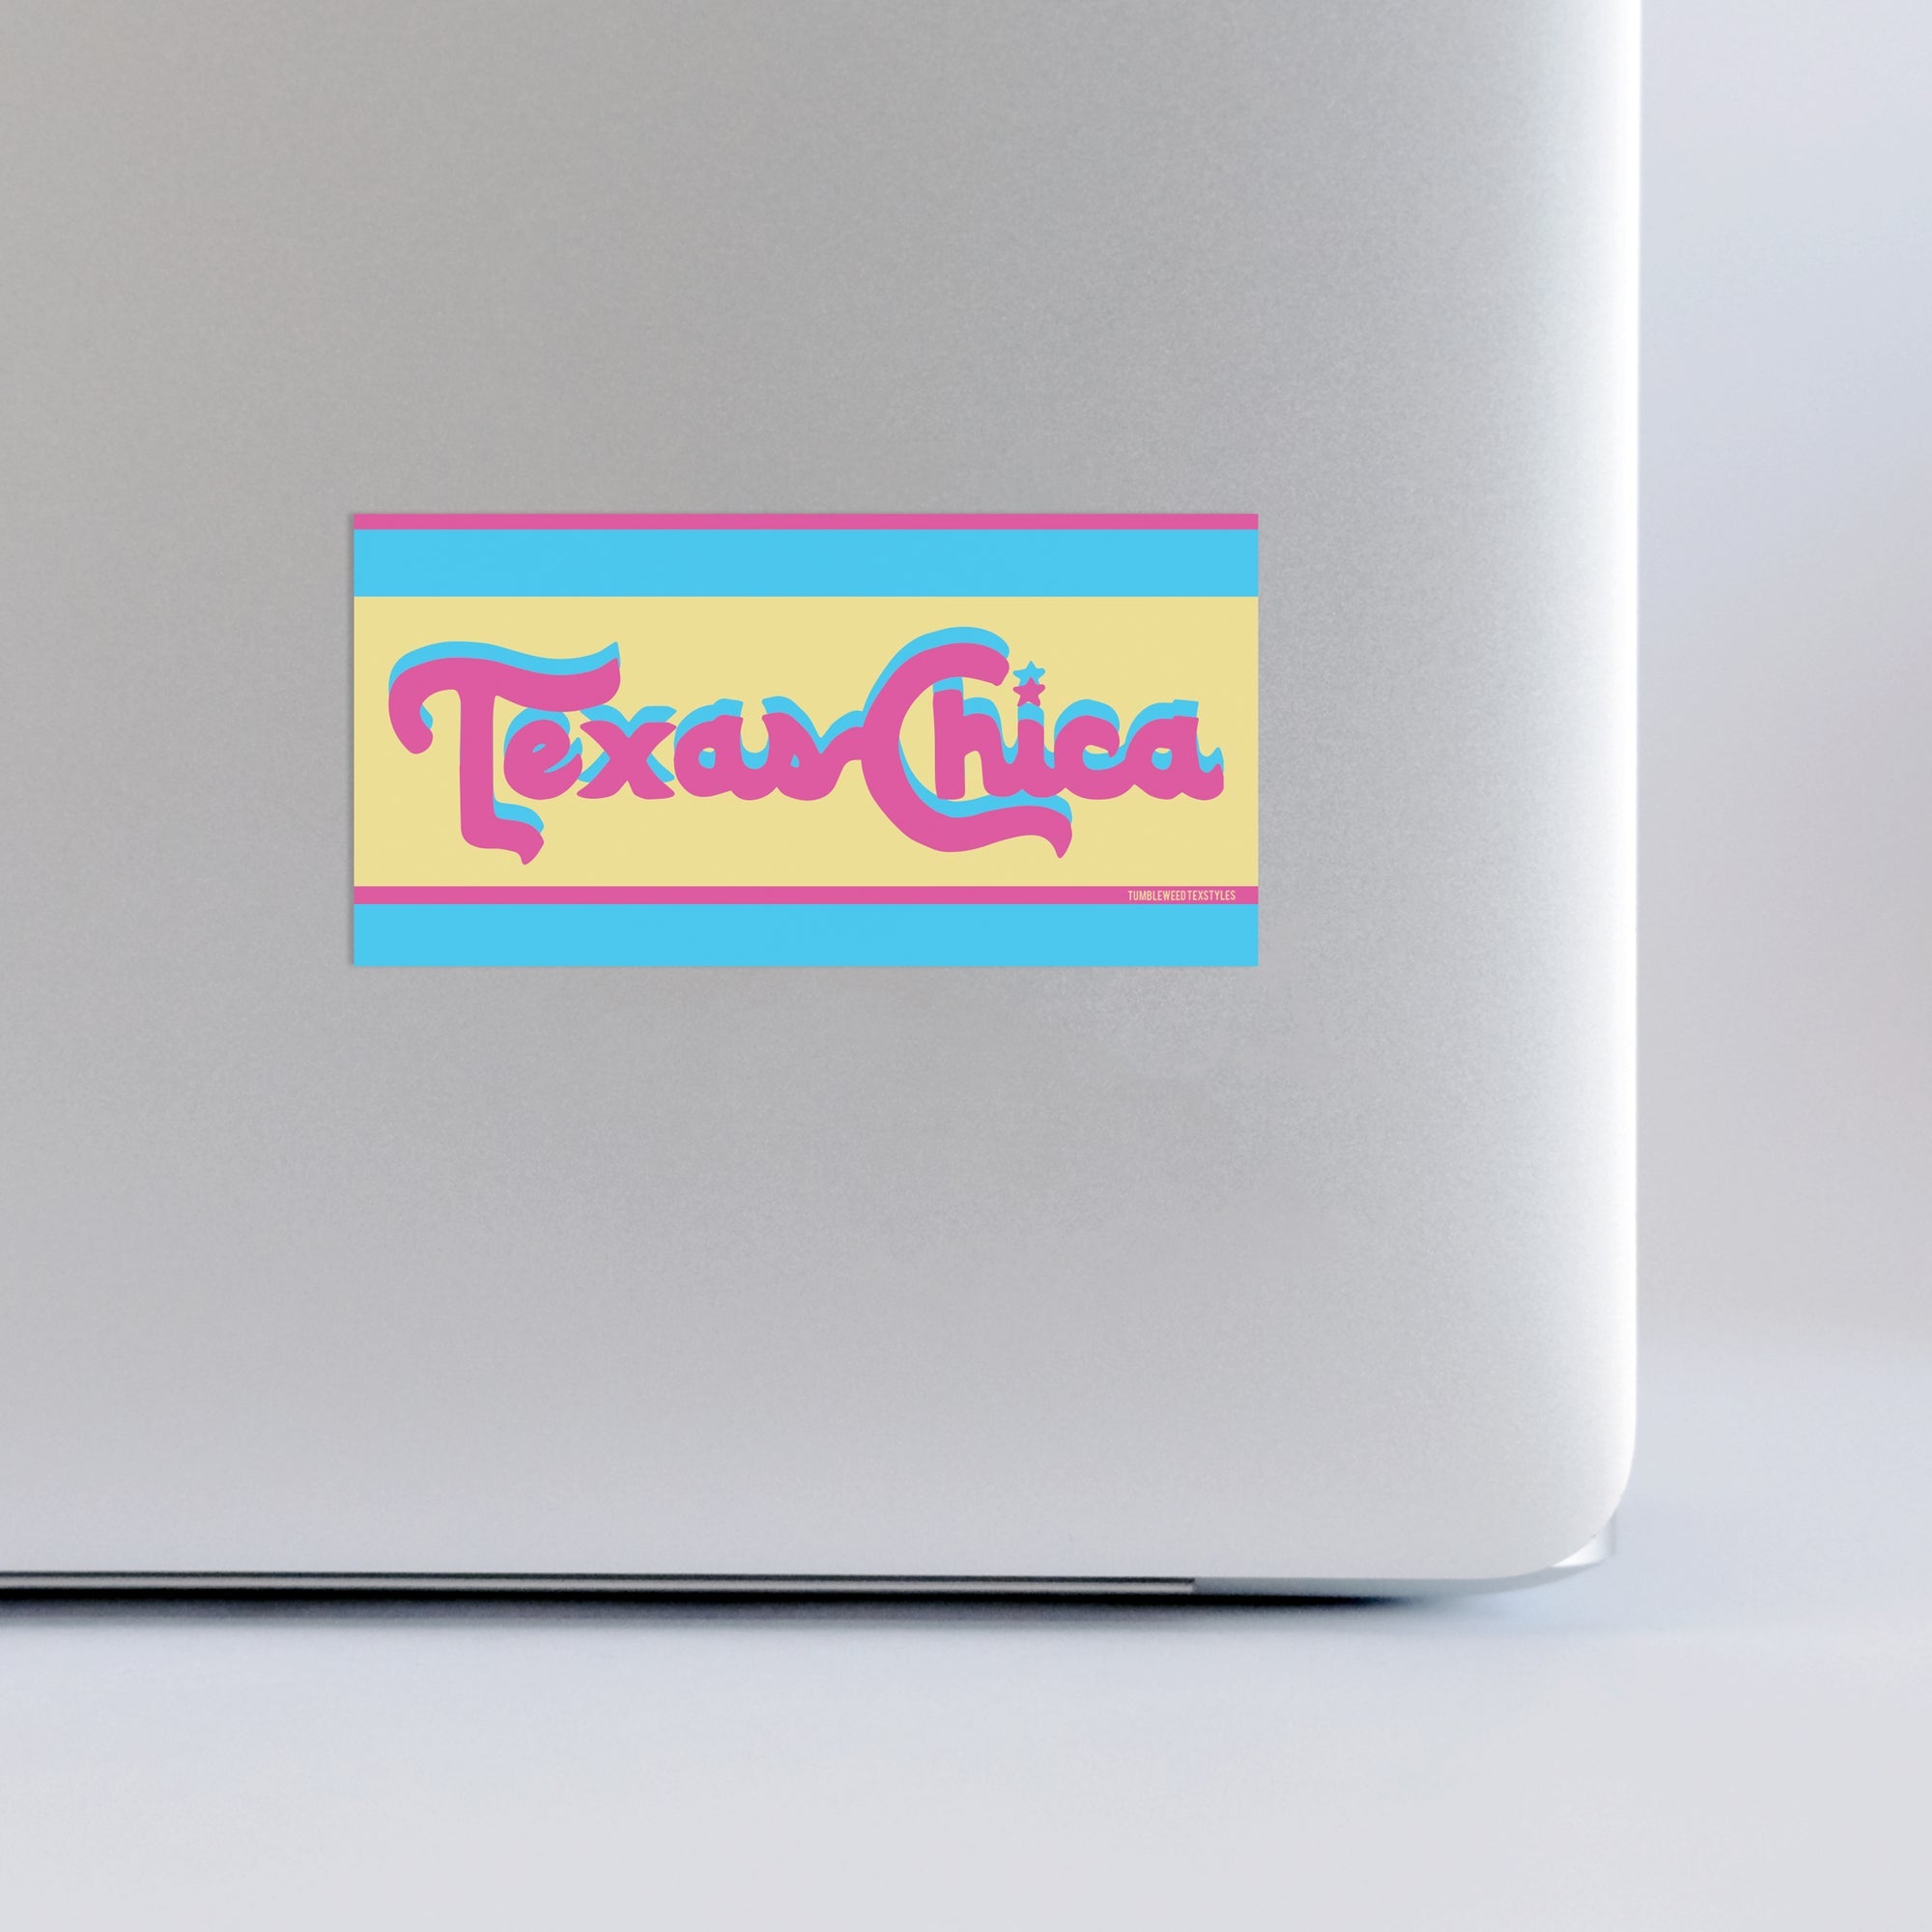 The Retro Texas Chica Sticker